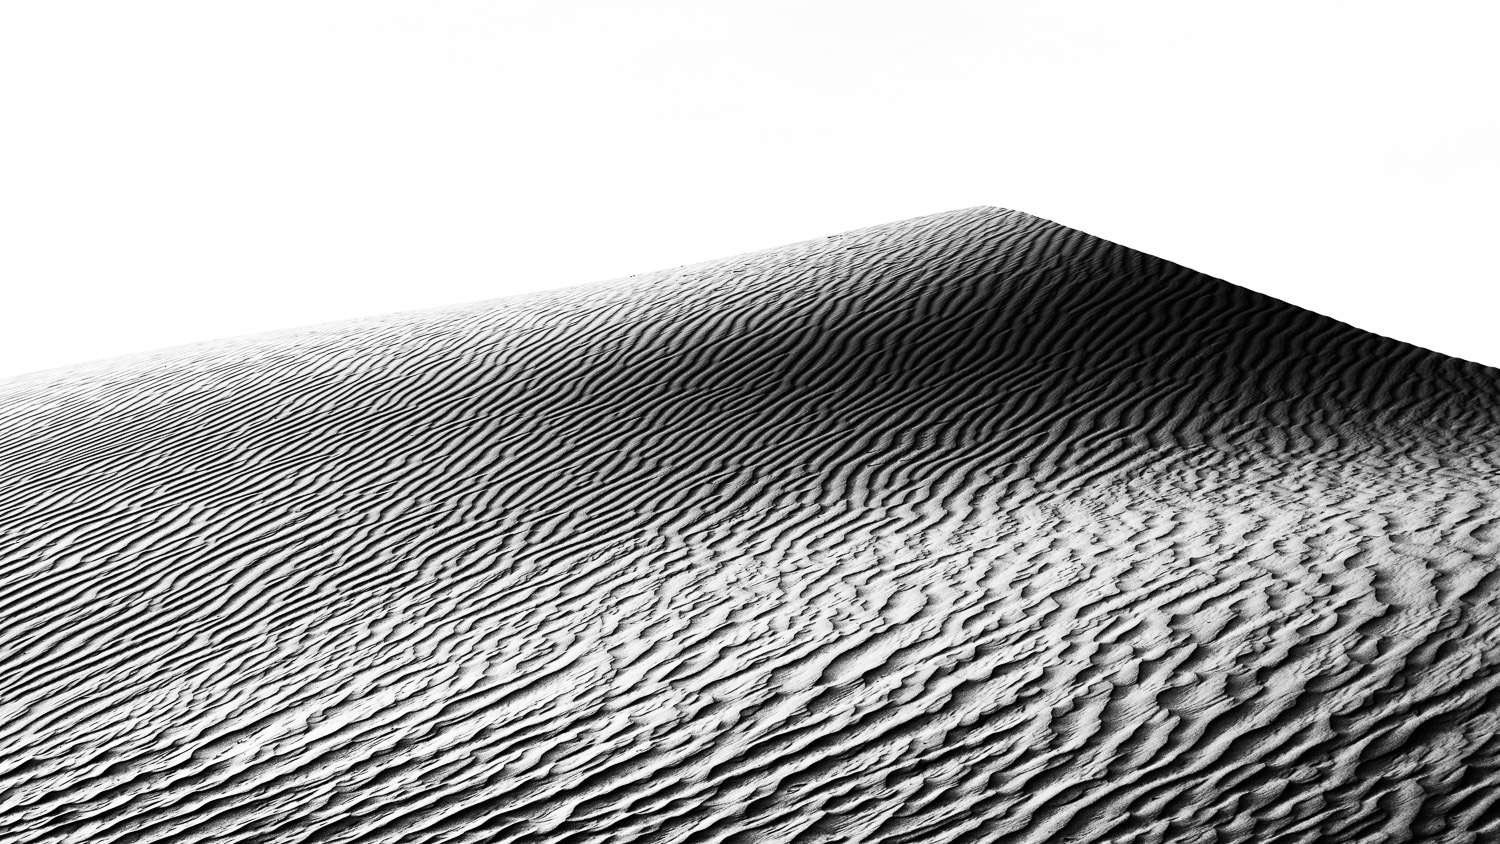 Dark Sands - Asia, Mongolia, desert, dune, sand, travel